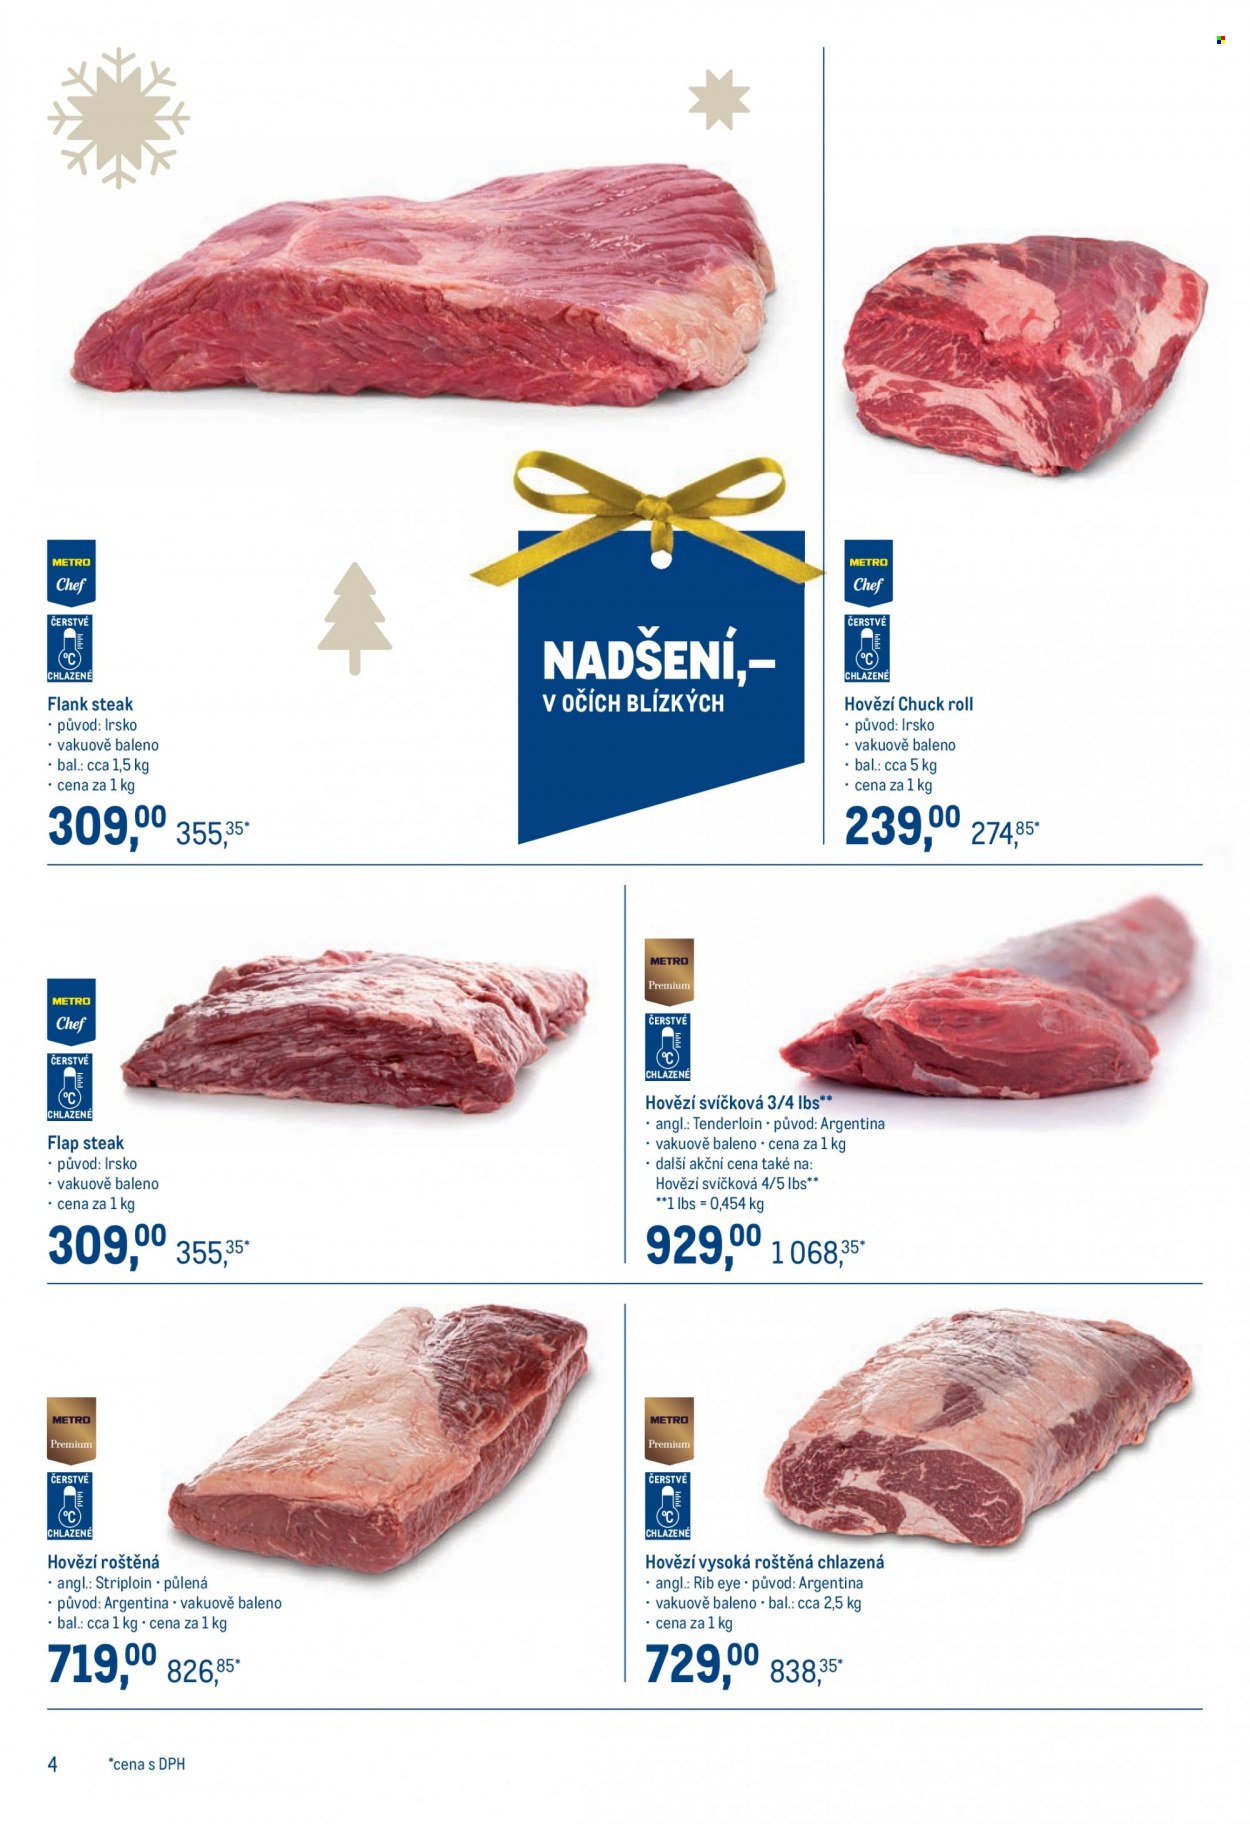 thumbnail - Leták MAKRO - 24.11.2021 - 4.1.2022 - Produkty v akci - steak, hovězí nízká roštěná, hovězí maso, rib eye steak, hovězí svíčková, hovězí vysoká roštěná, flank steak, hovězí chuck roll, flap steak. Strana 4.